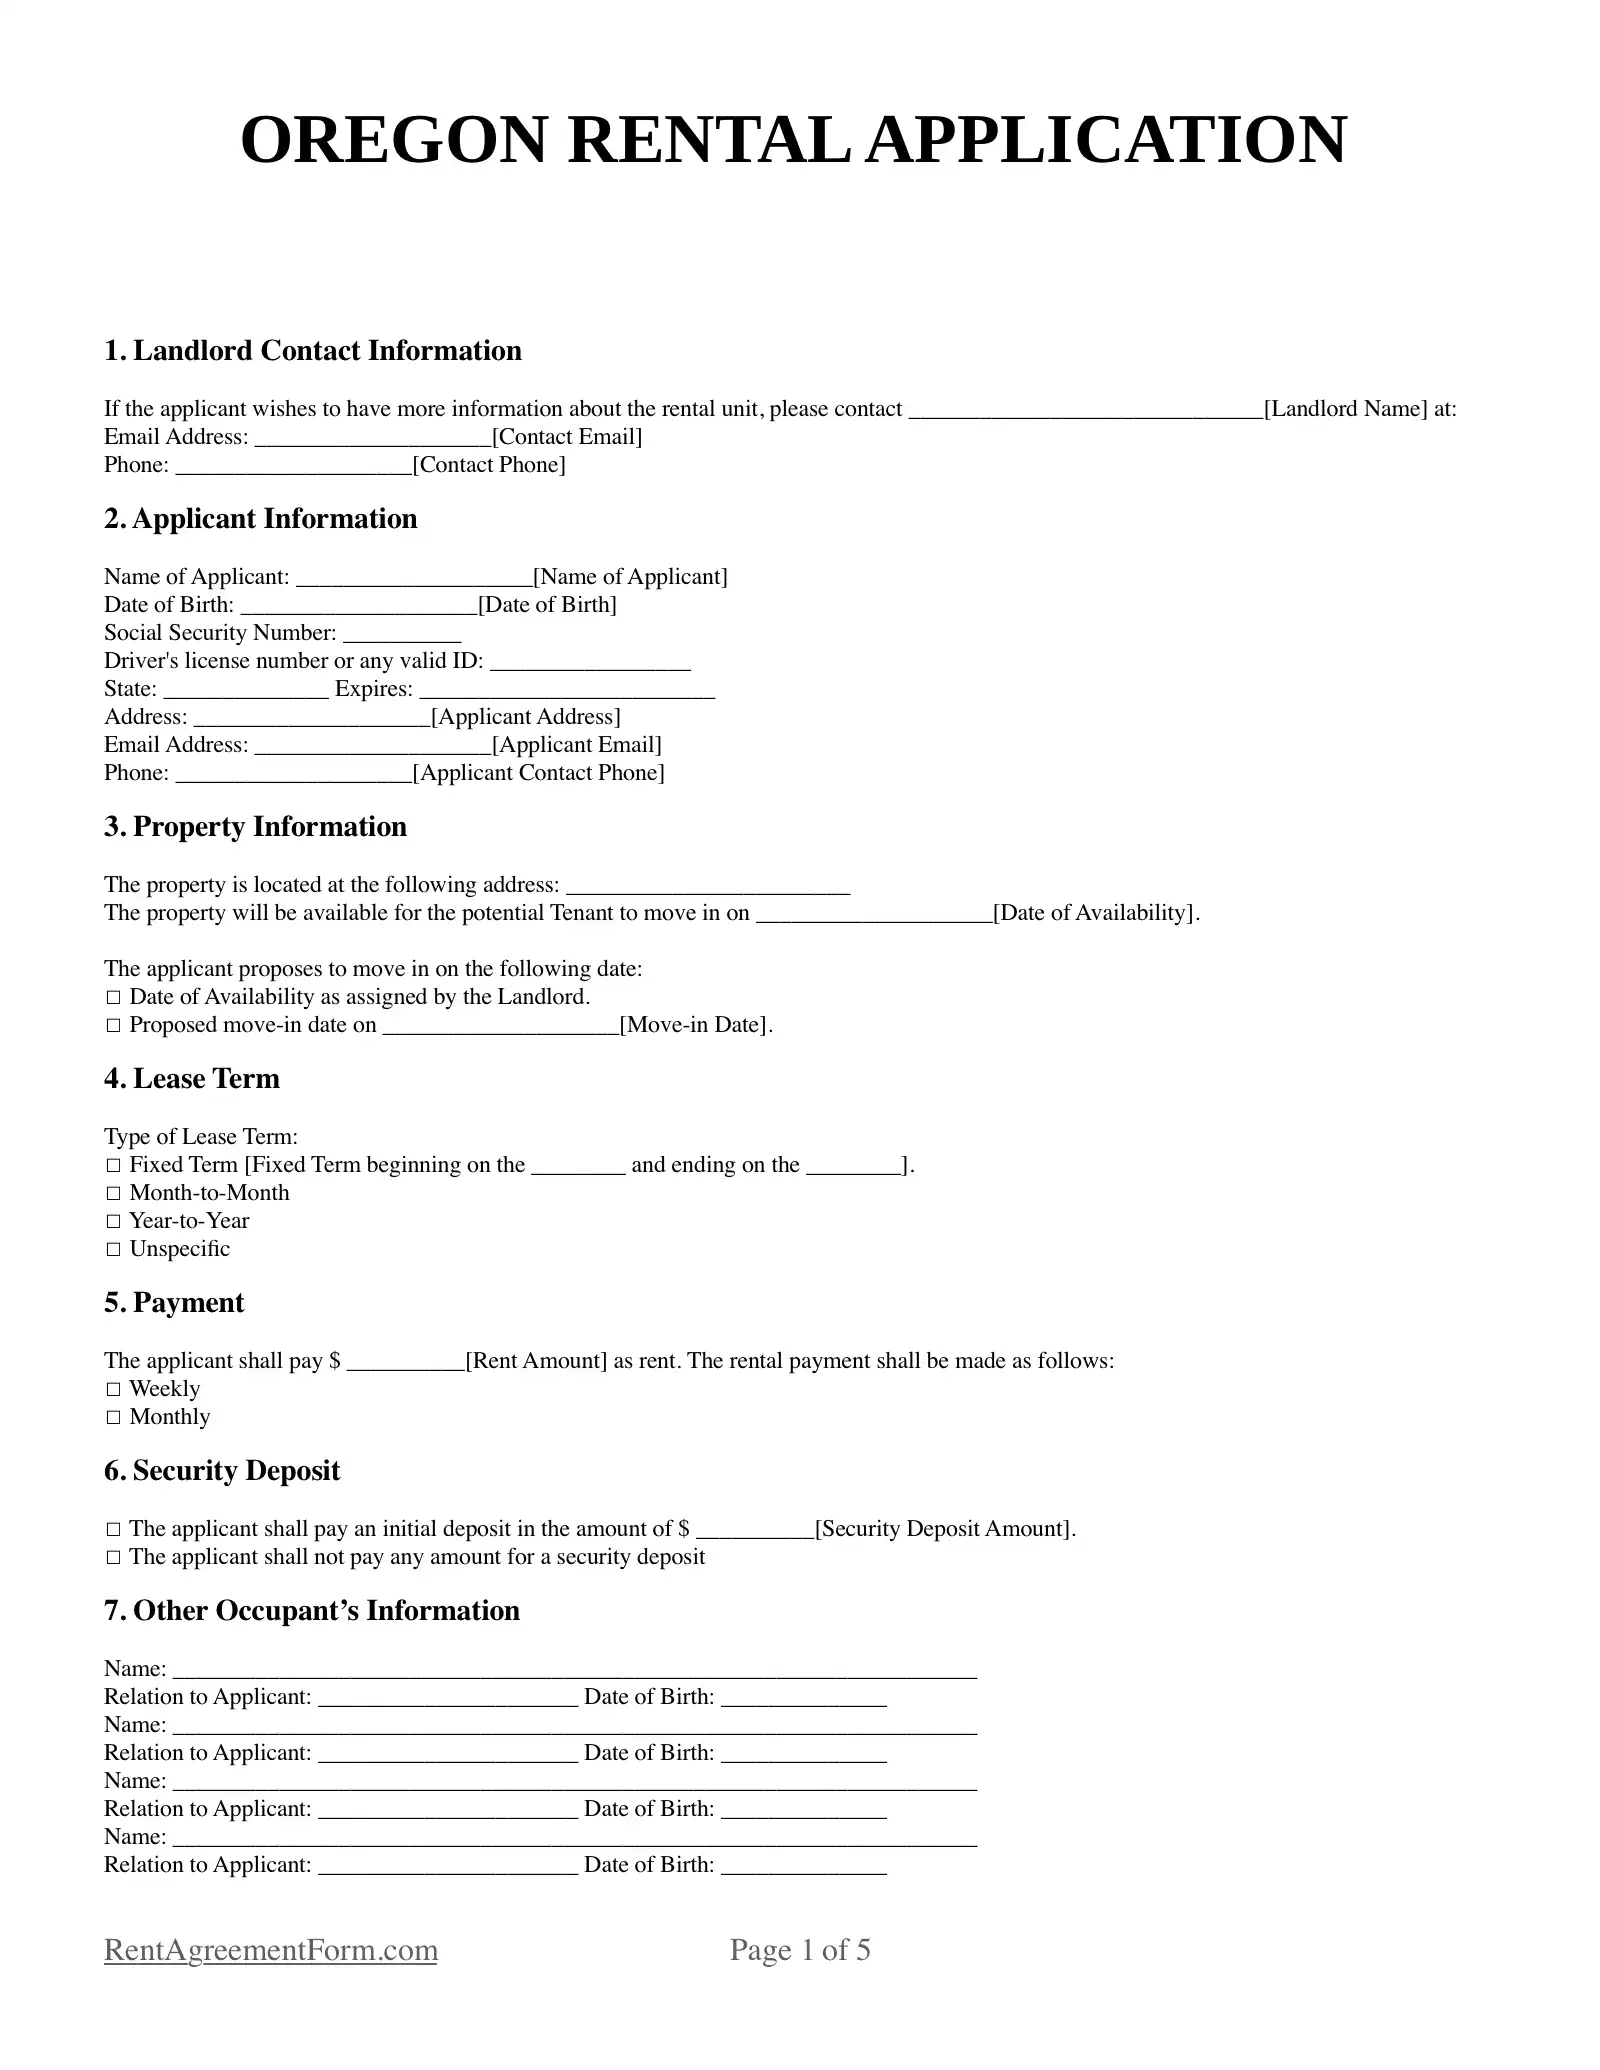 Oregon Rental Application Sample